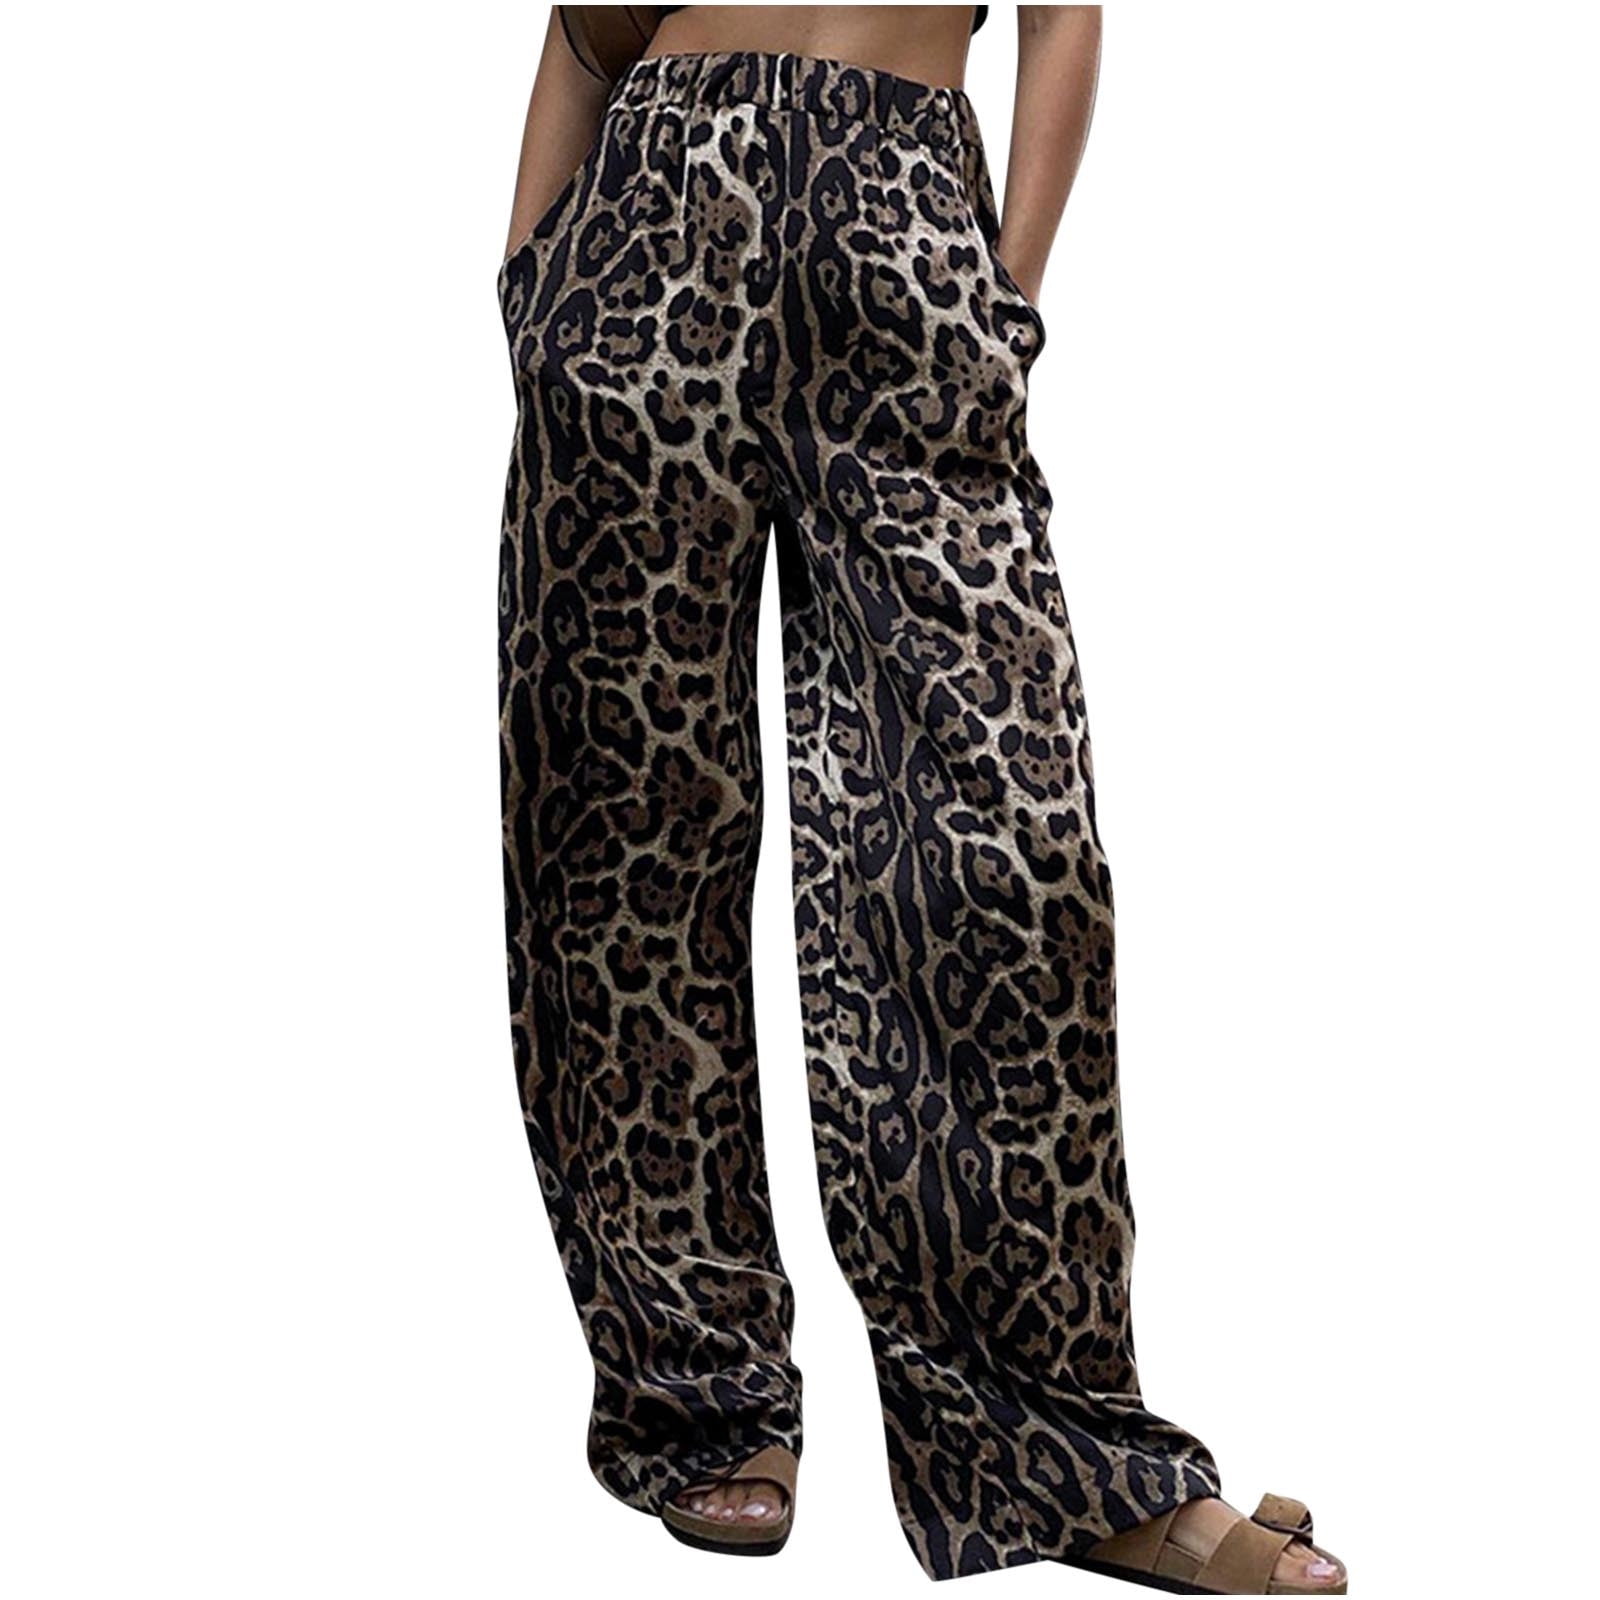 APEXFWDT Women Leopard Print Jeans Pants Casual Wide-Leg Cargo Pants ...